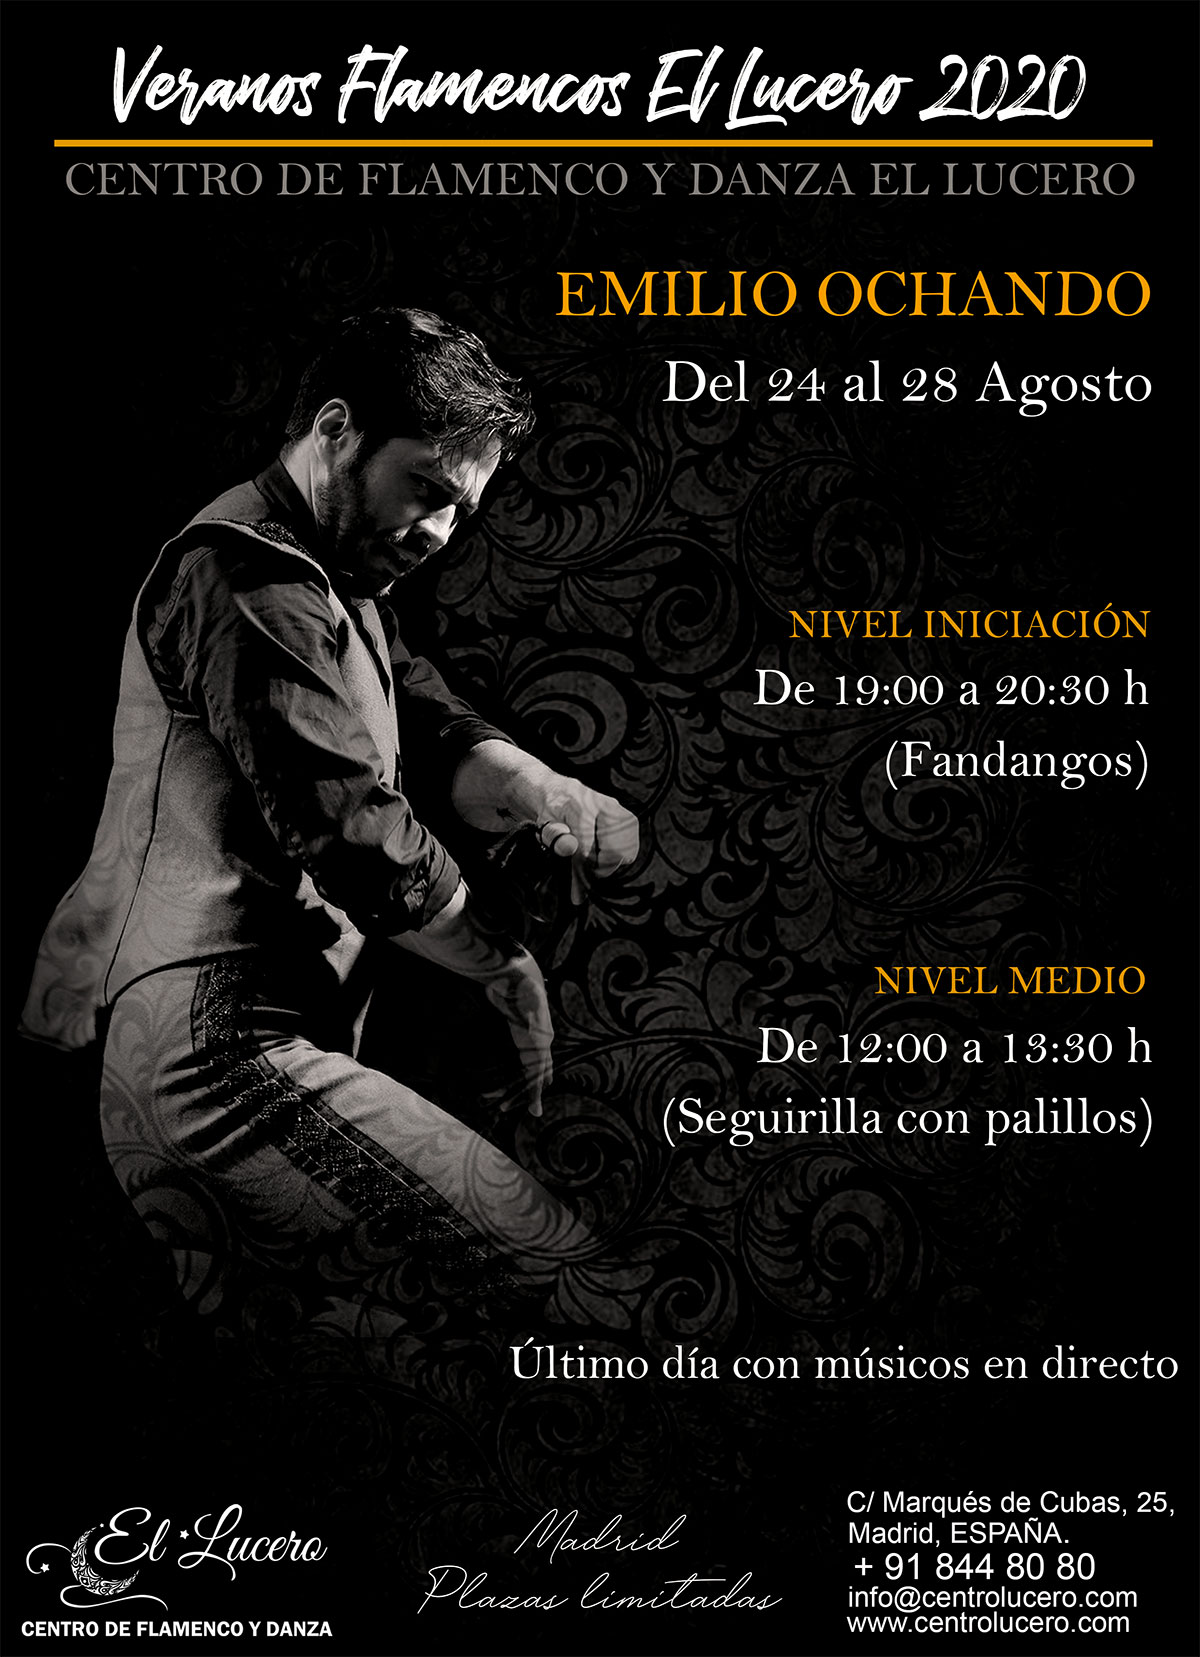 Veranos Flamencos EL LUCERO - Emilio Ochando